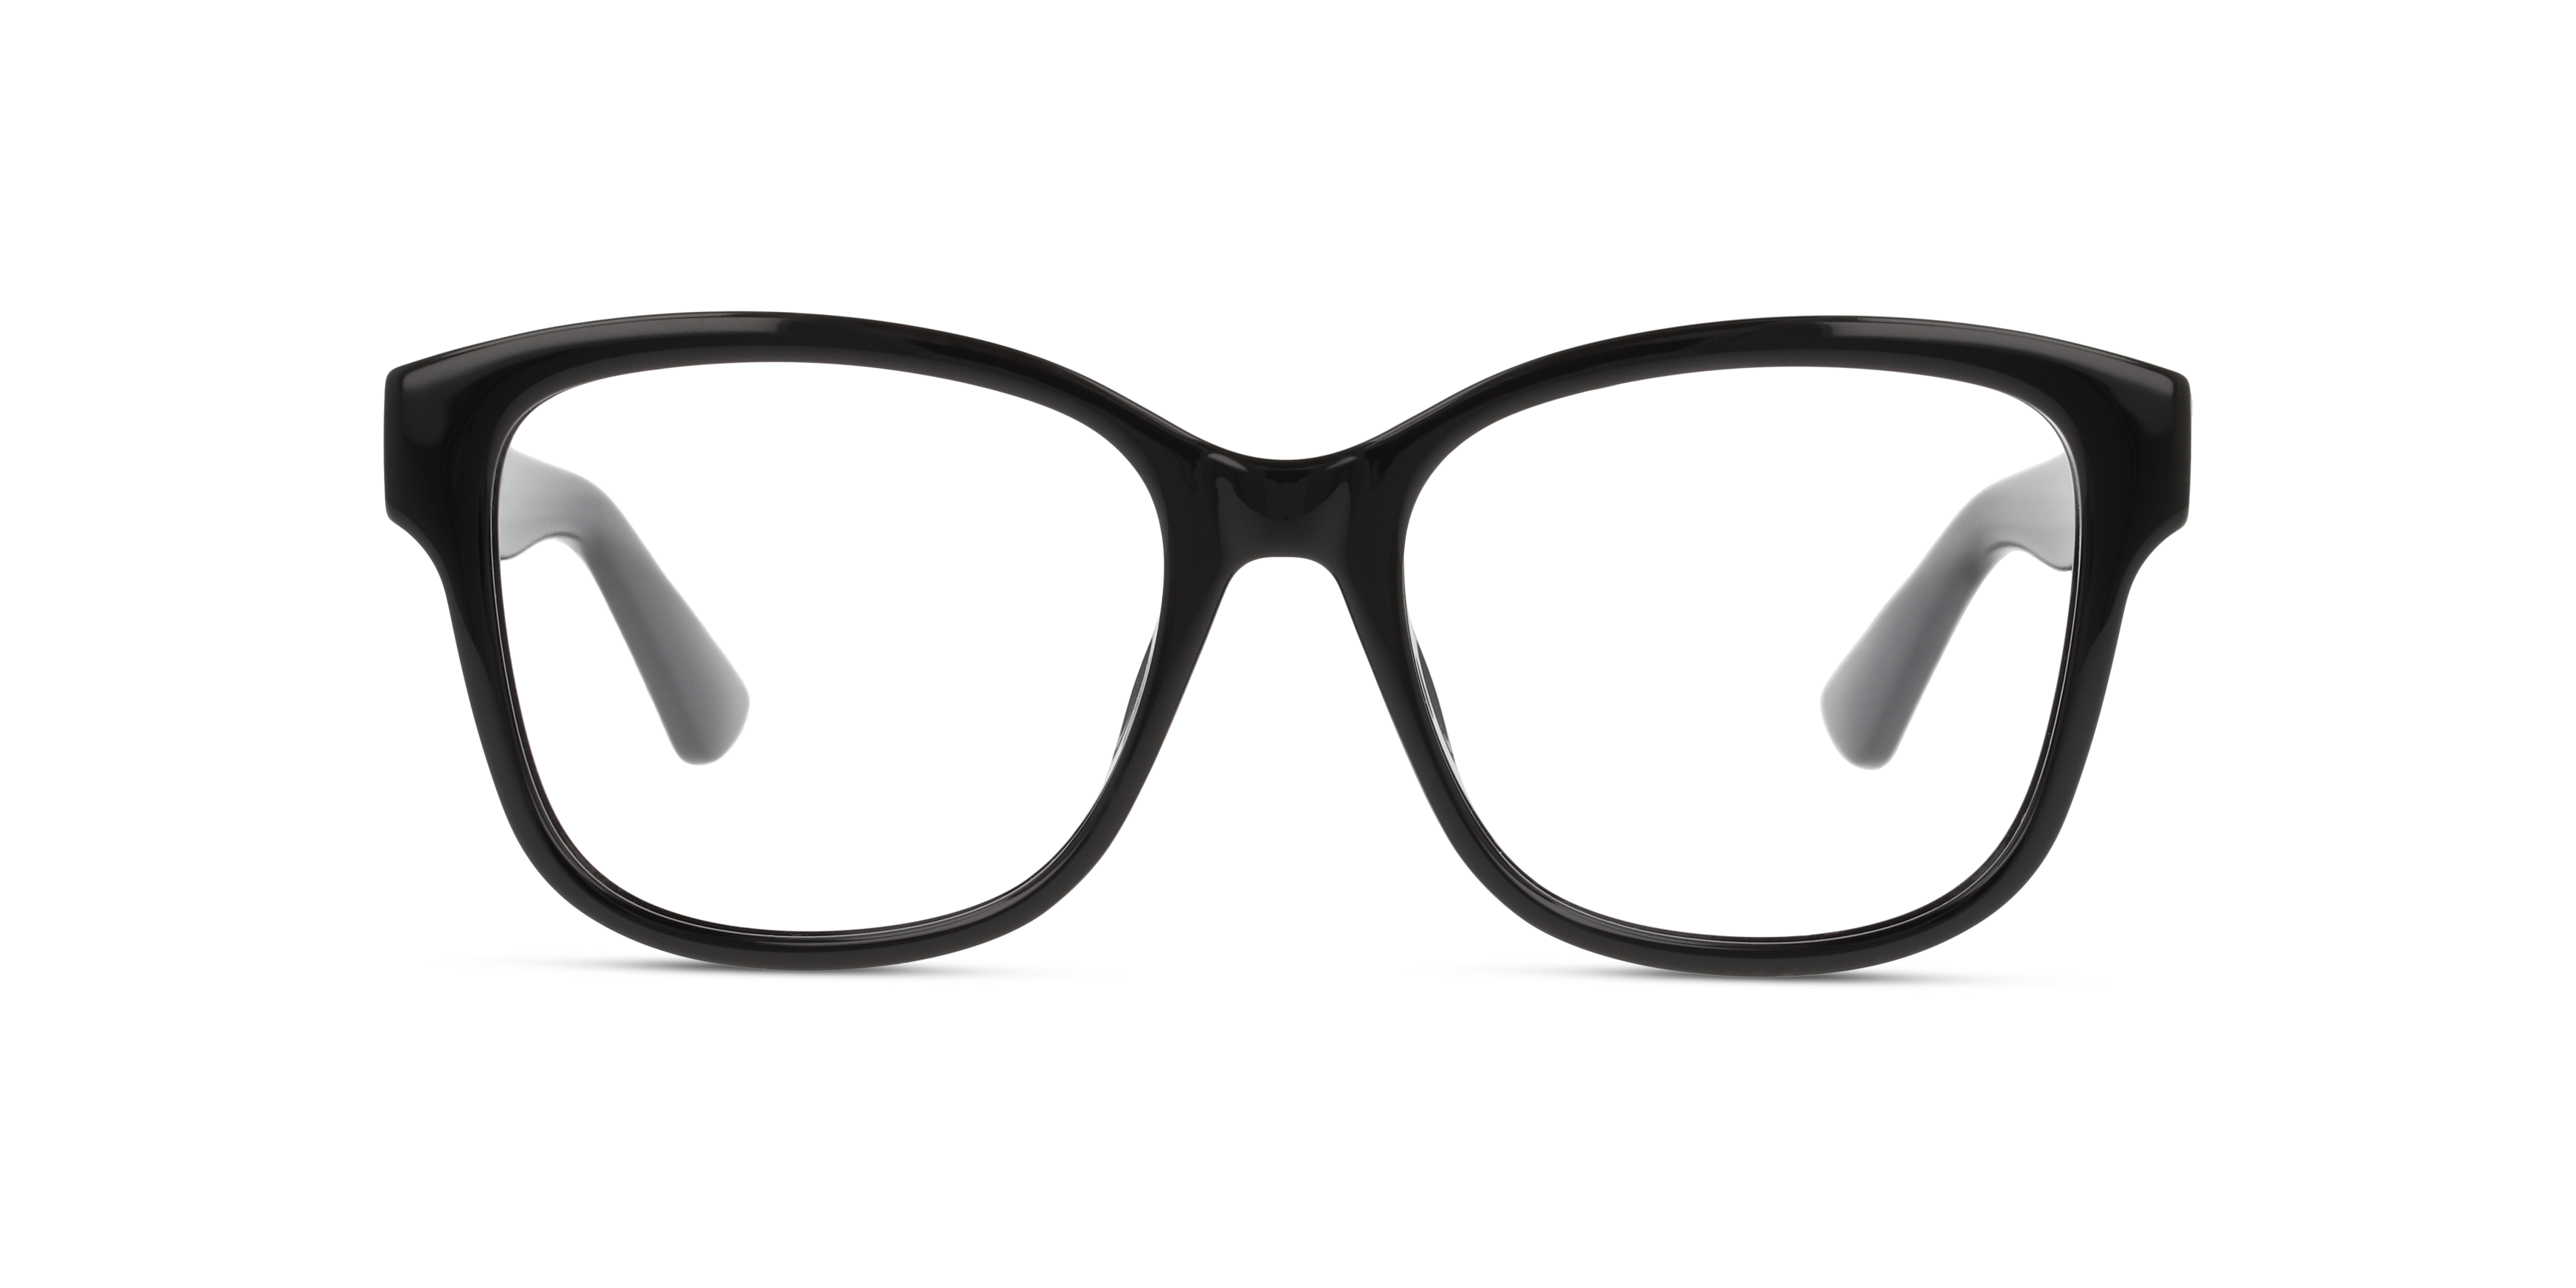 langsom Forbandet løst Gucci solbriller | Prøv dem online | Fri fragt. Fri retur | Synoptik